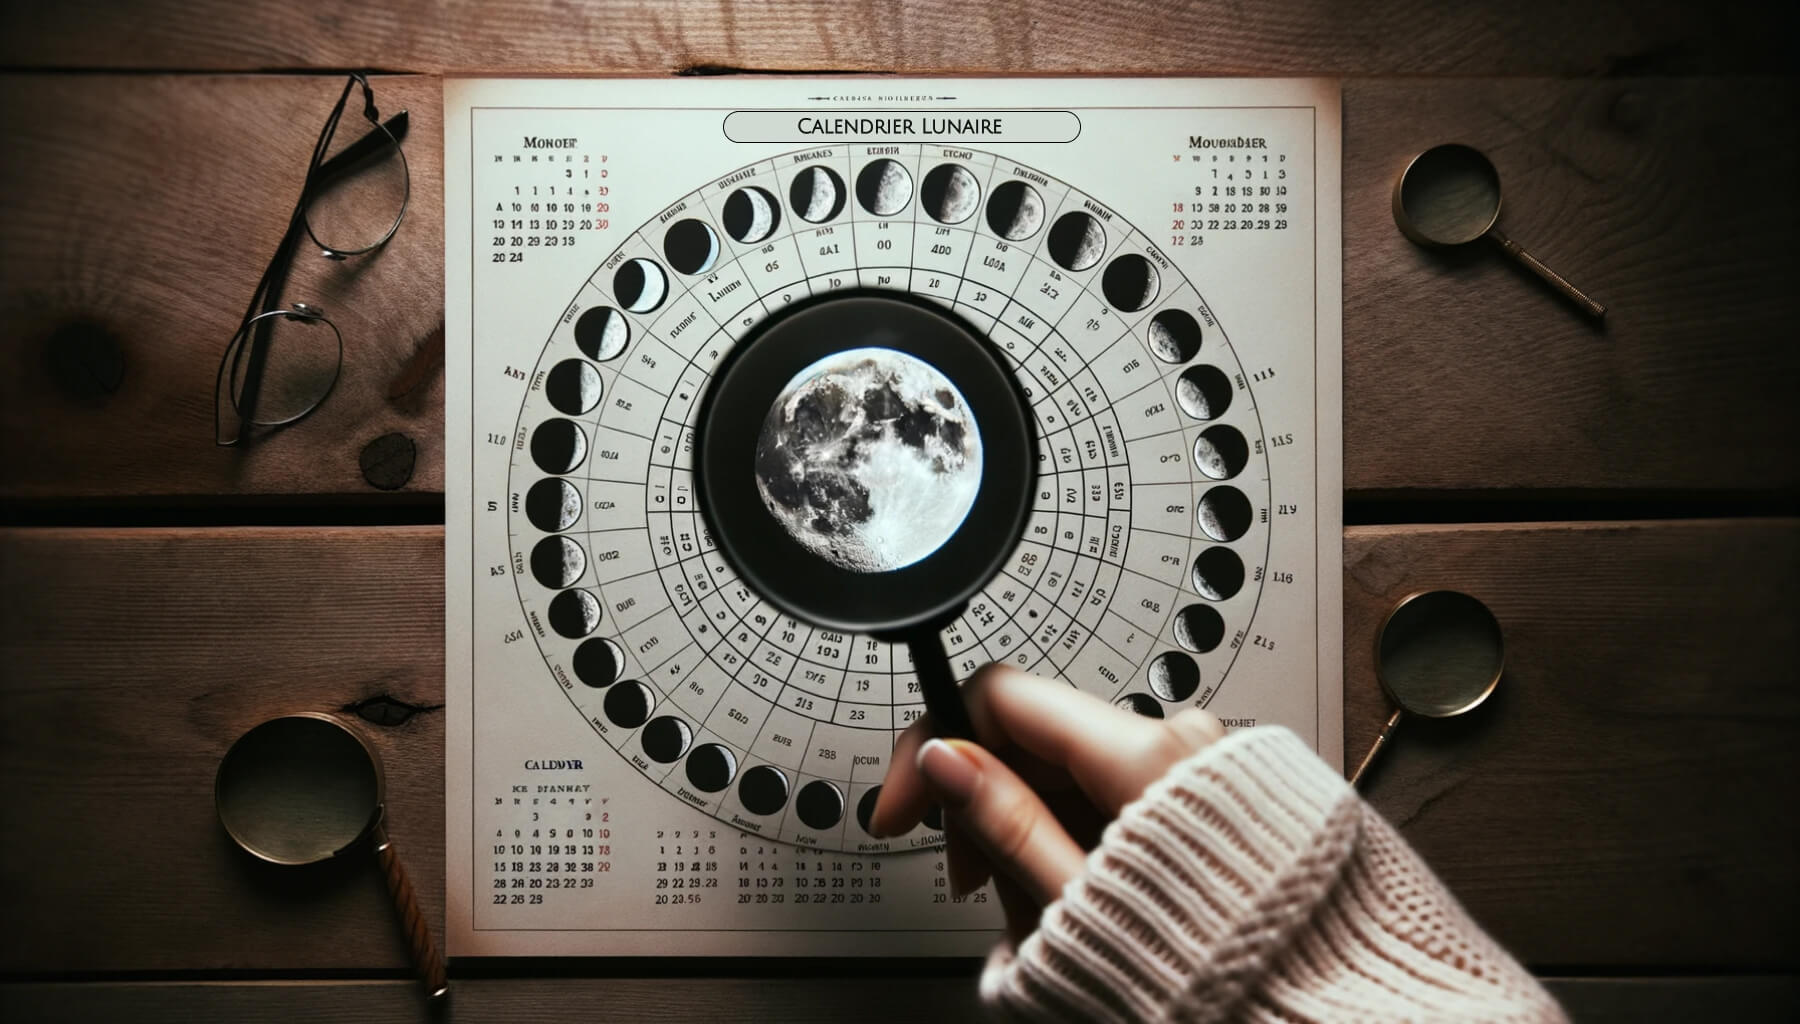 Calendrier des Pleines Lunes 2024 : Dates et horaires de toutes